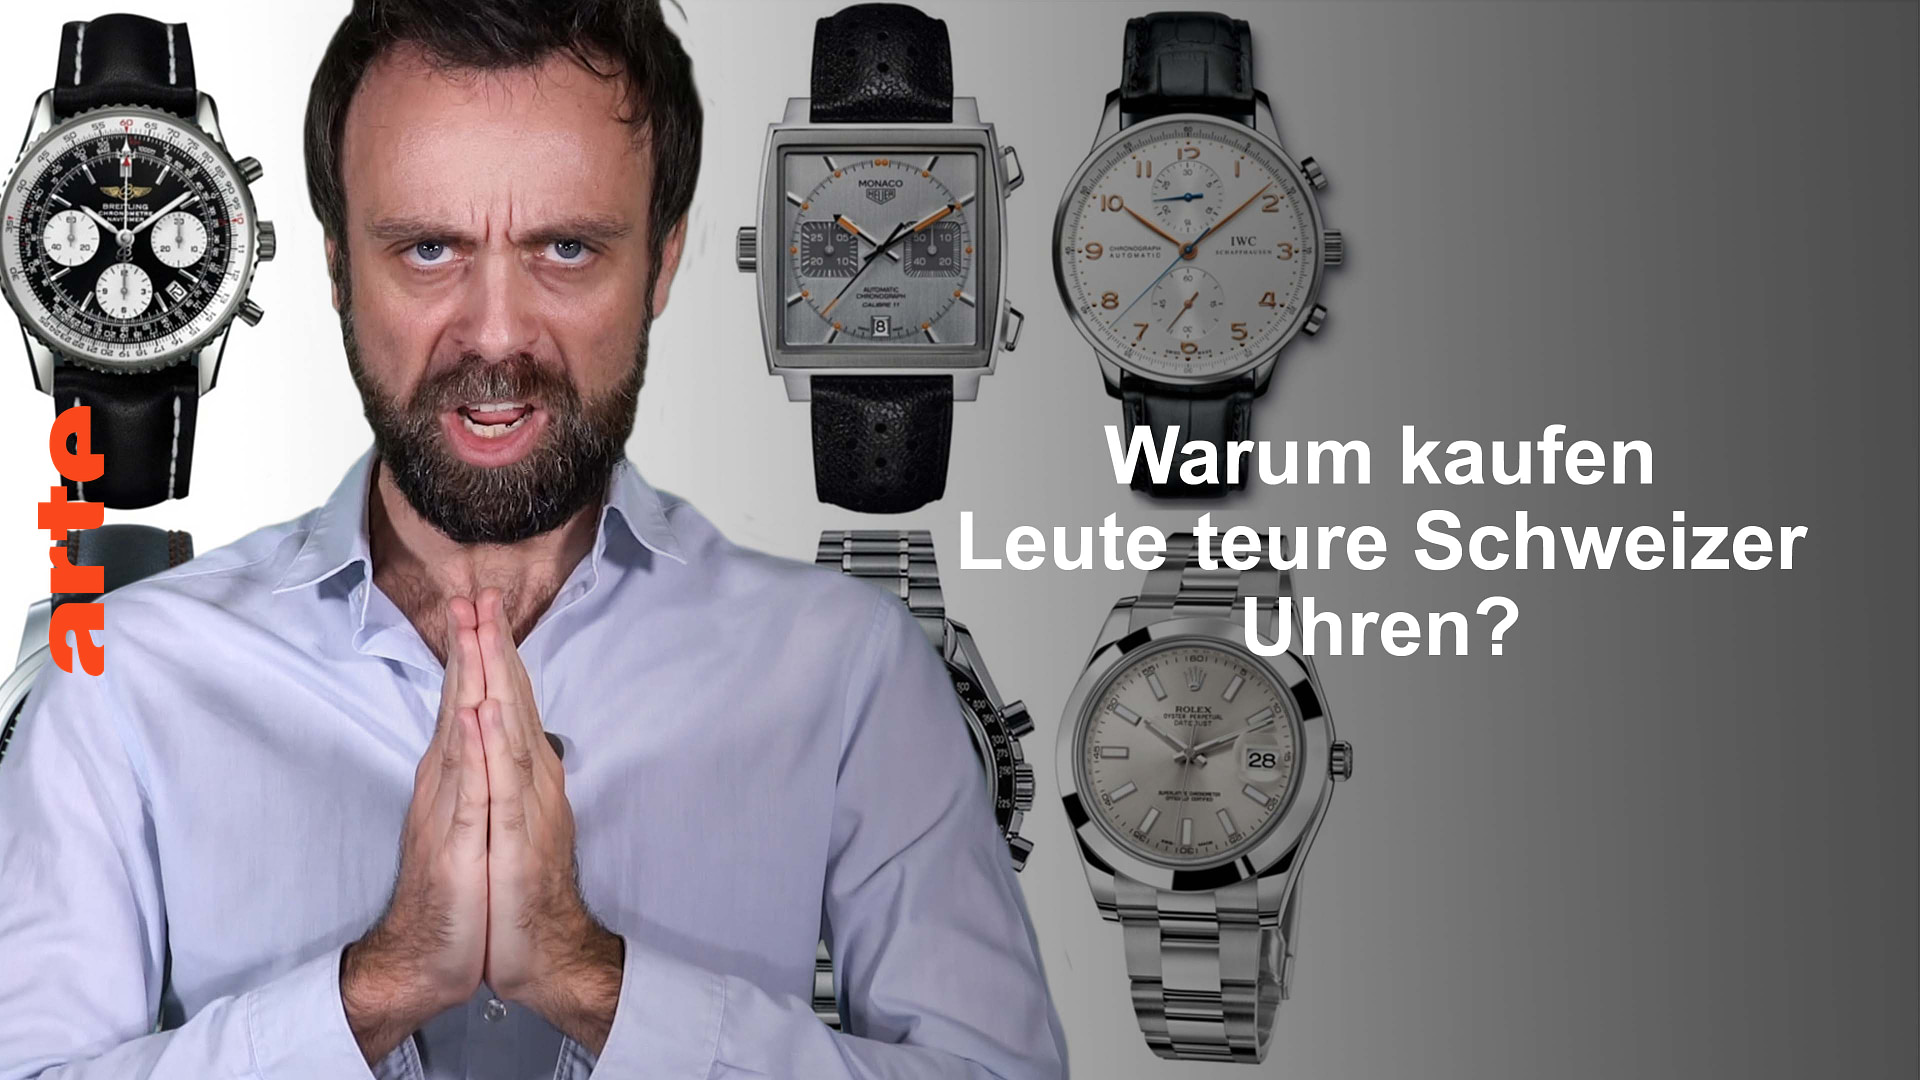 Warum kaufen Leute teure Schweizer Uhren?